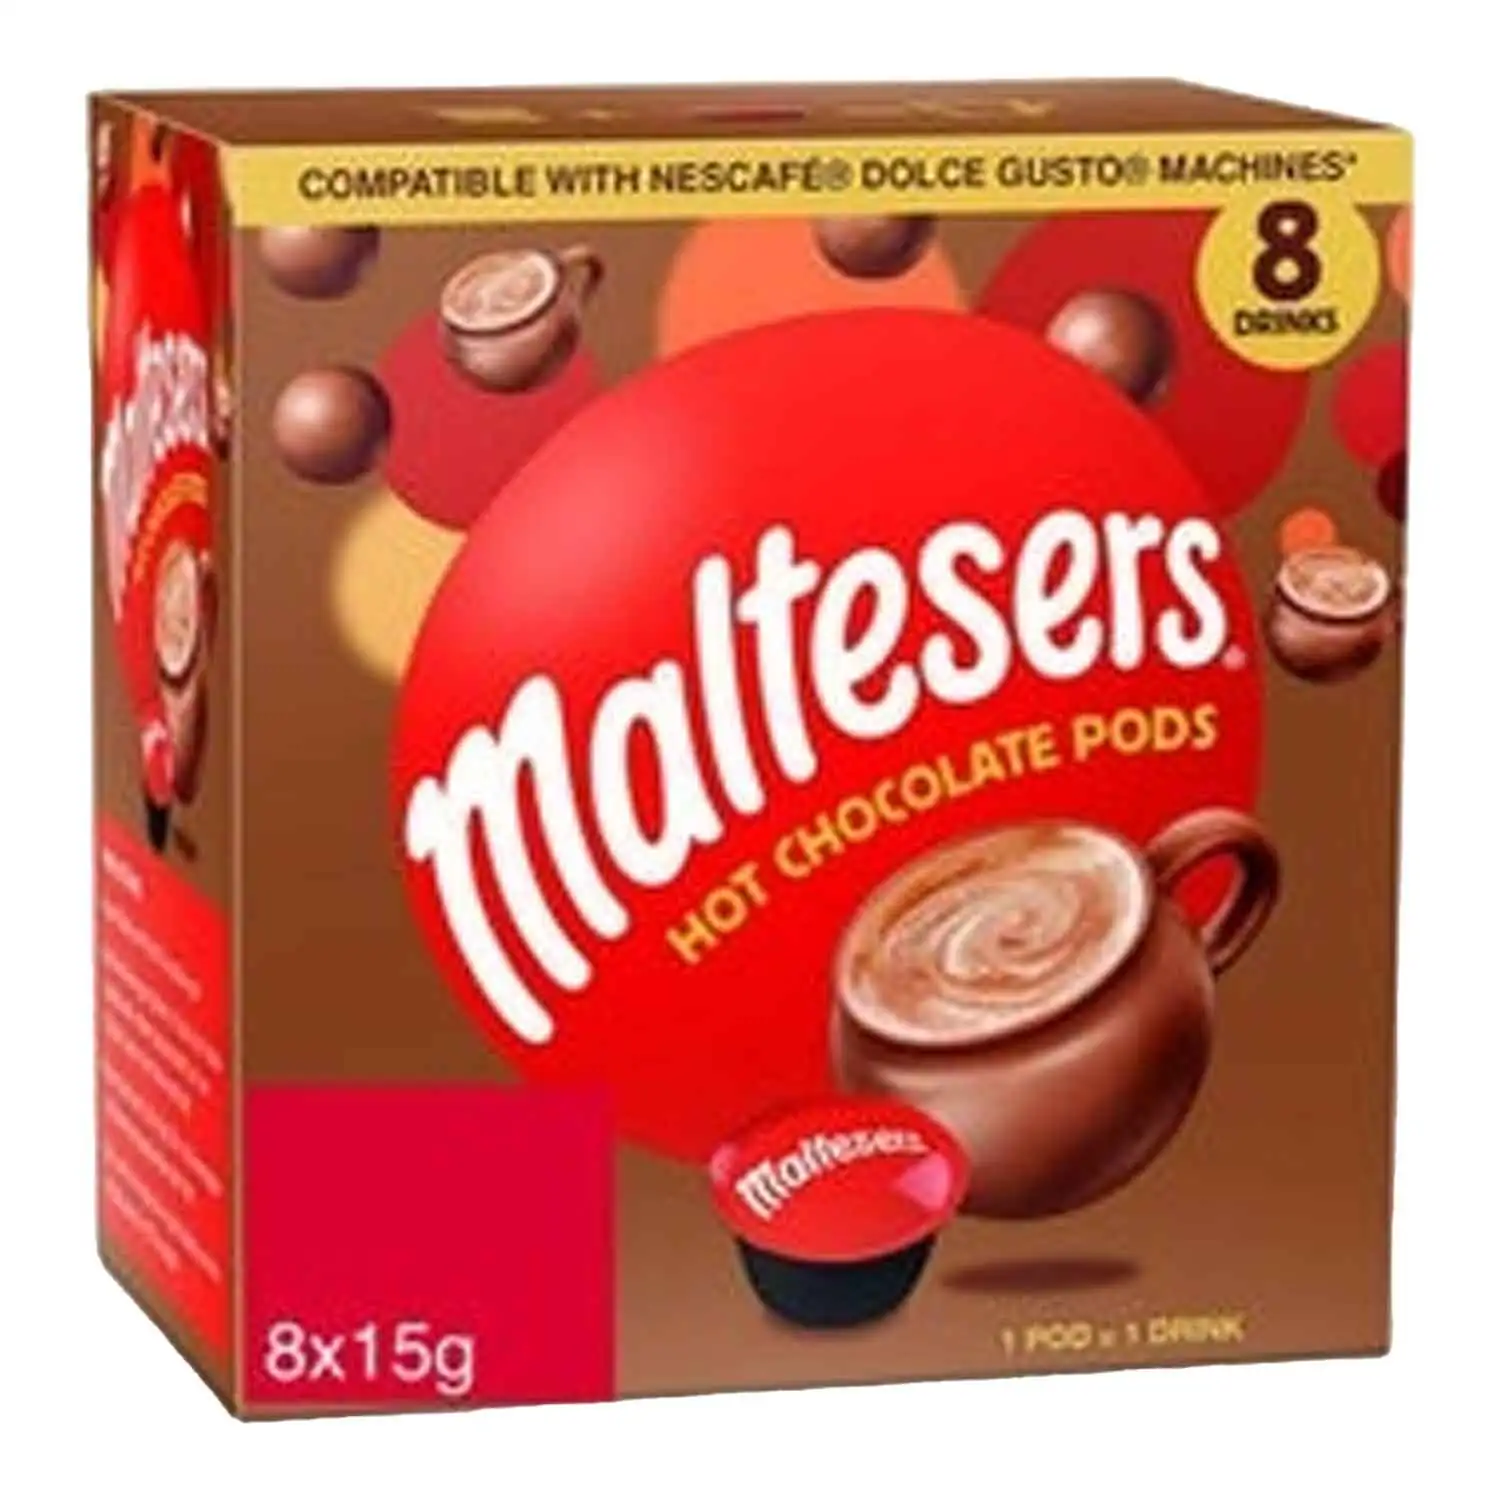 Maltesers chocolat chaud pods 8x15g - Buy at Real Tobacco